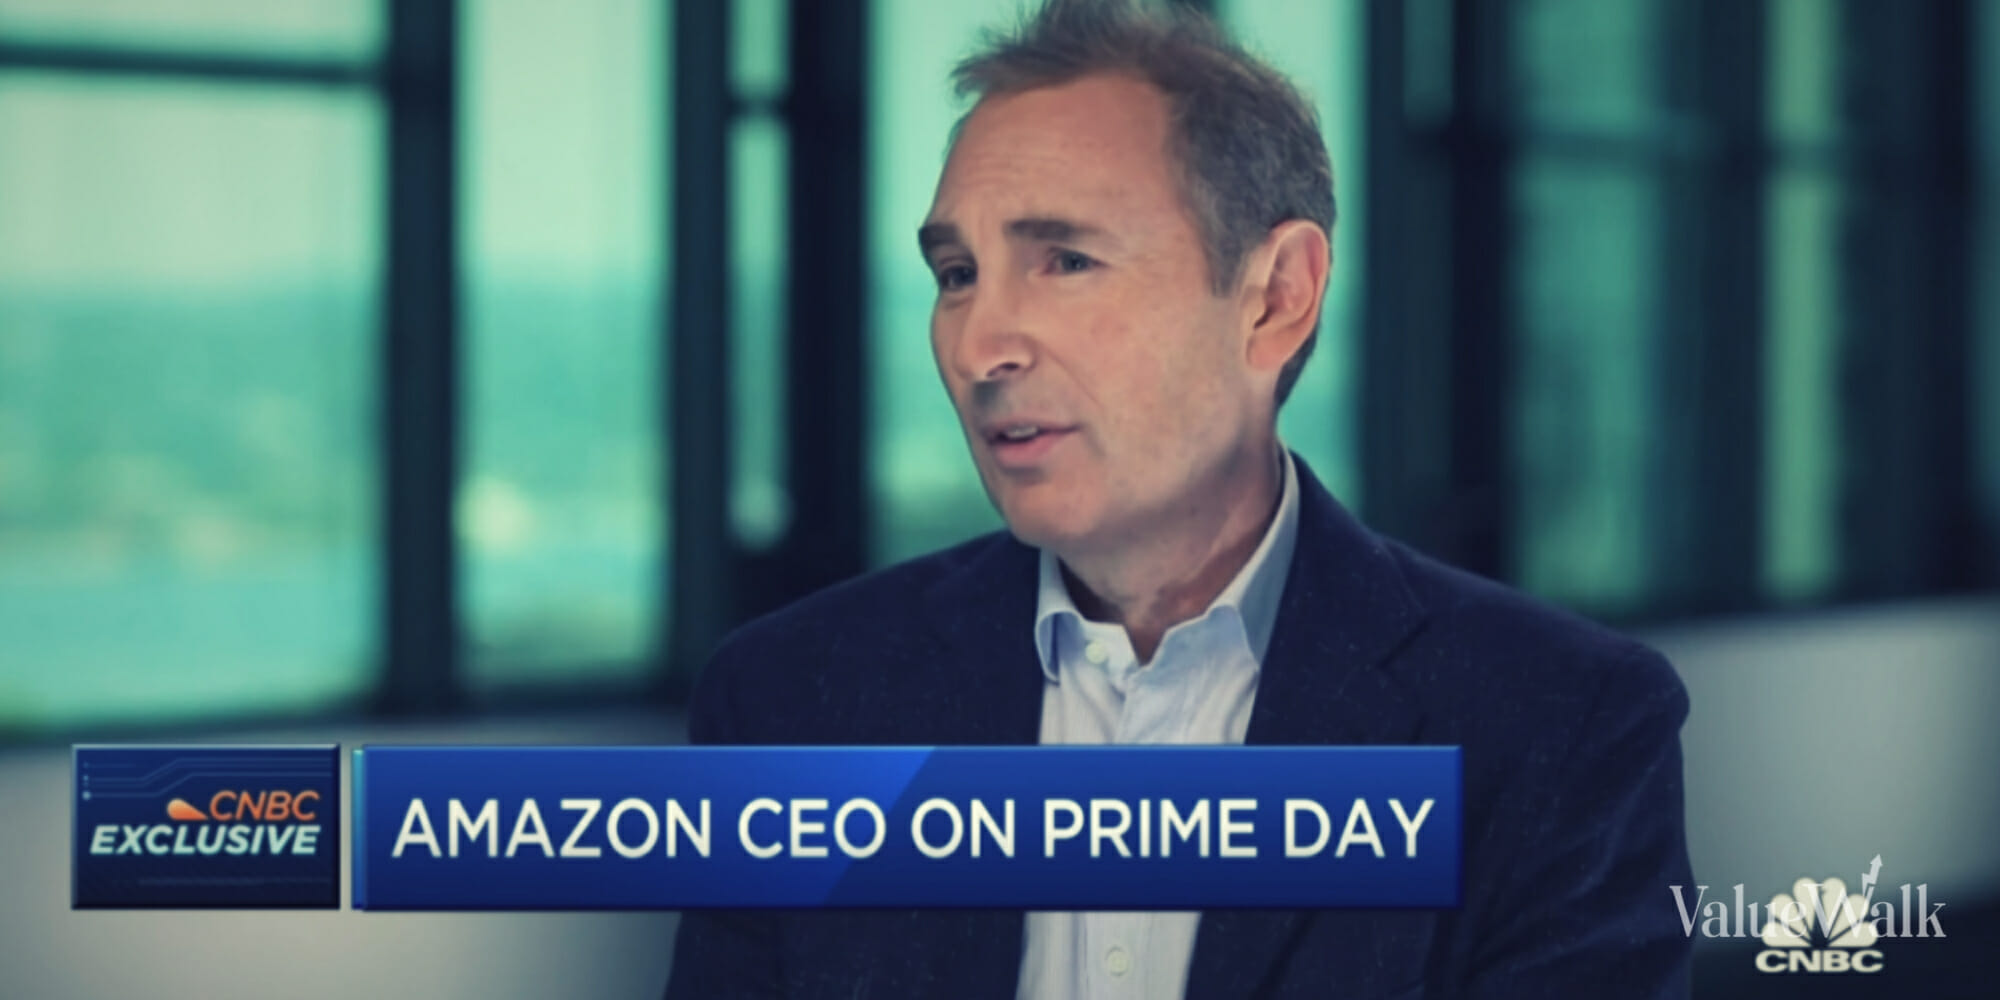 Amazon CEO Andy Jassy